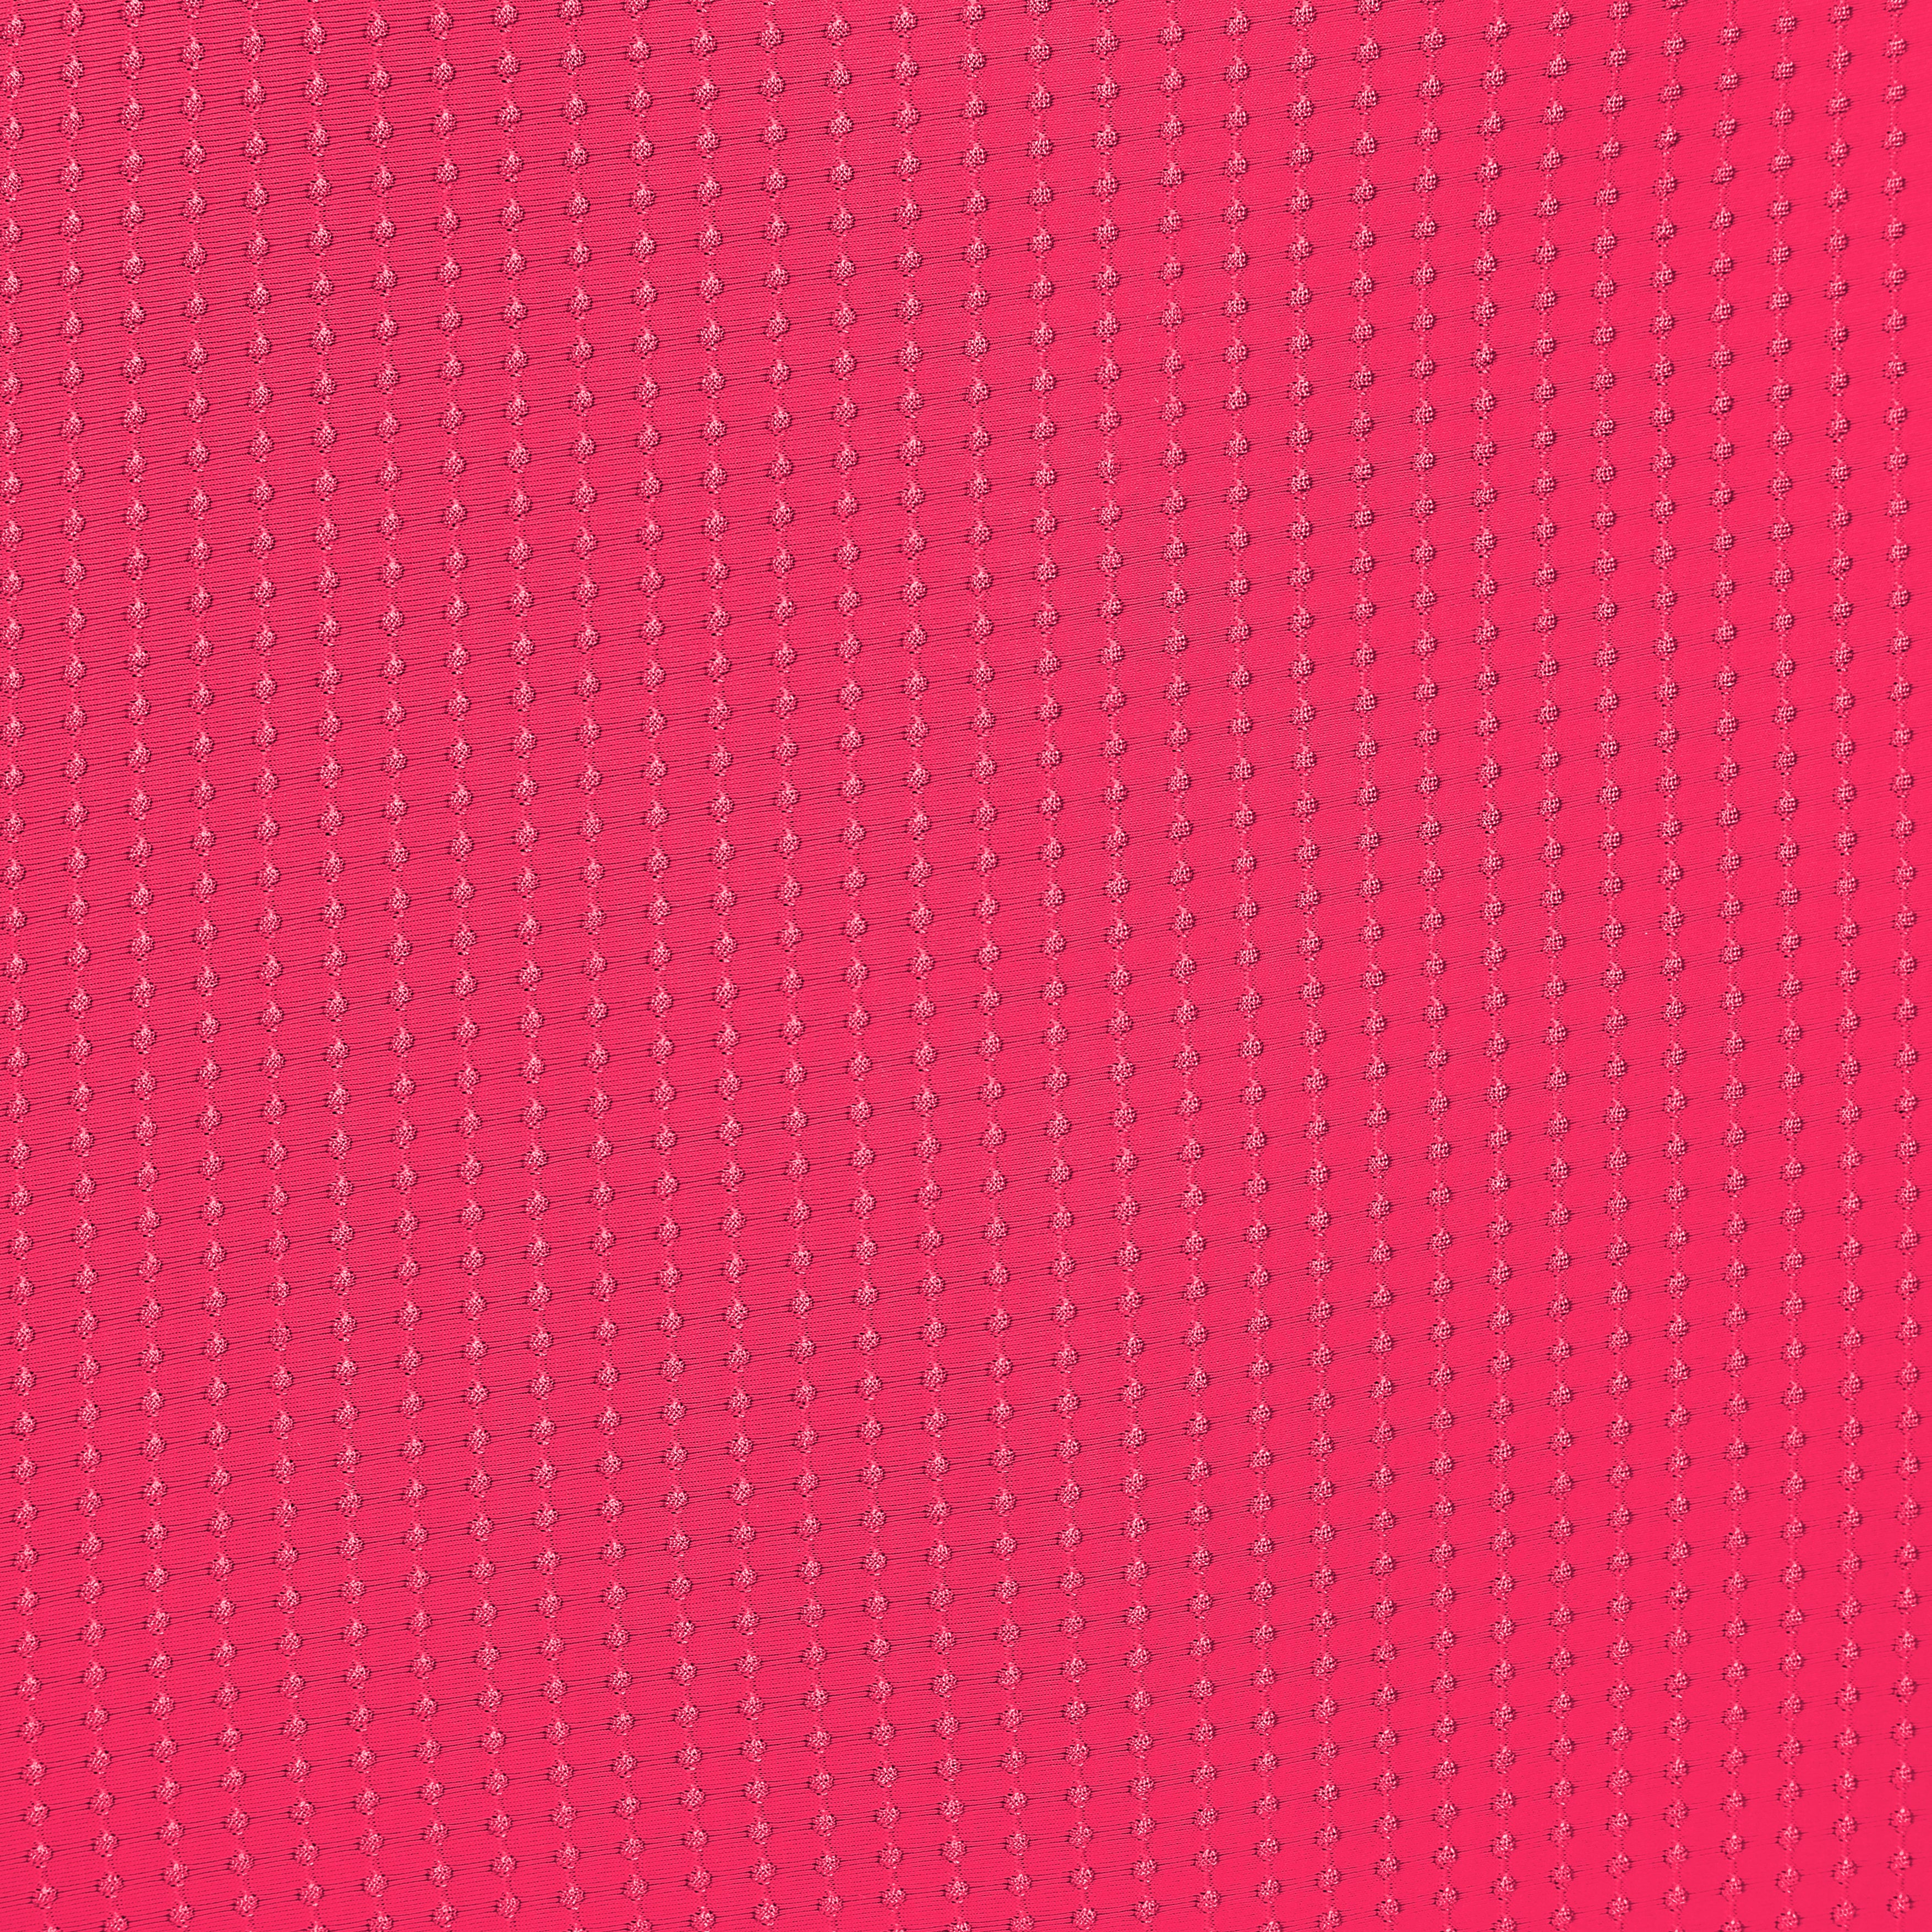 Bottom Dots-Virtual-Pink Italy